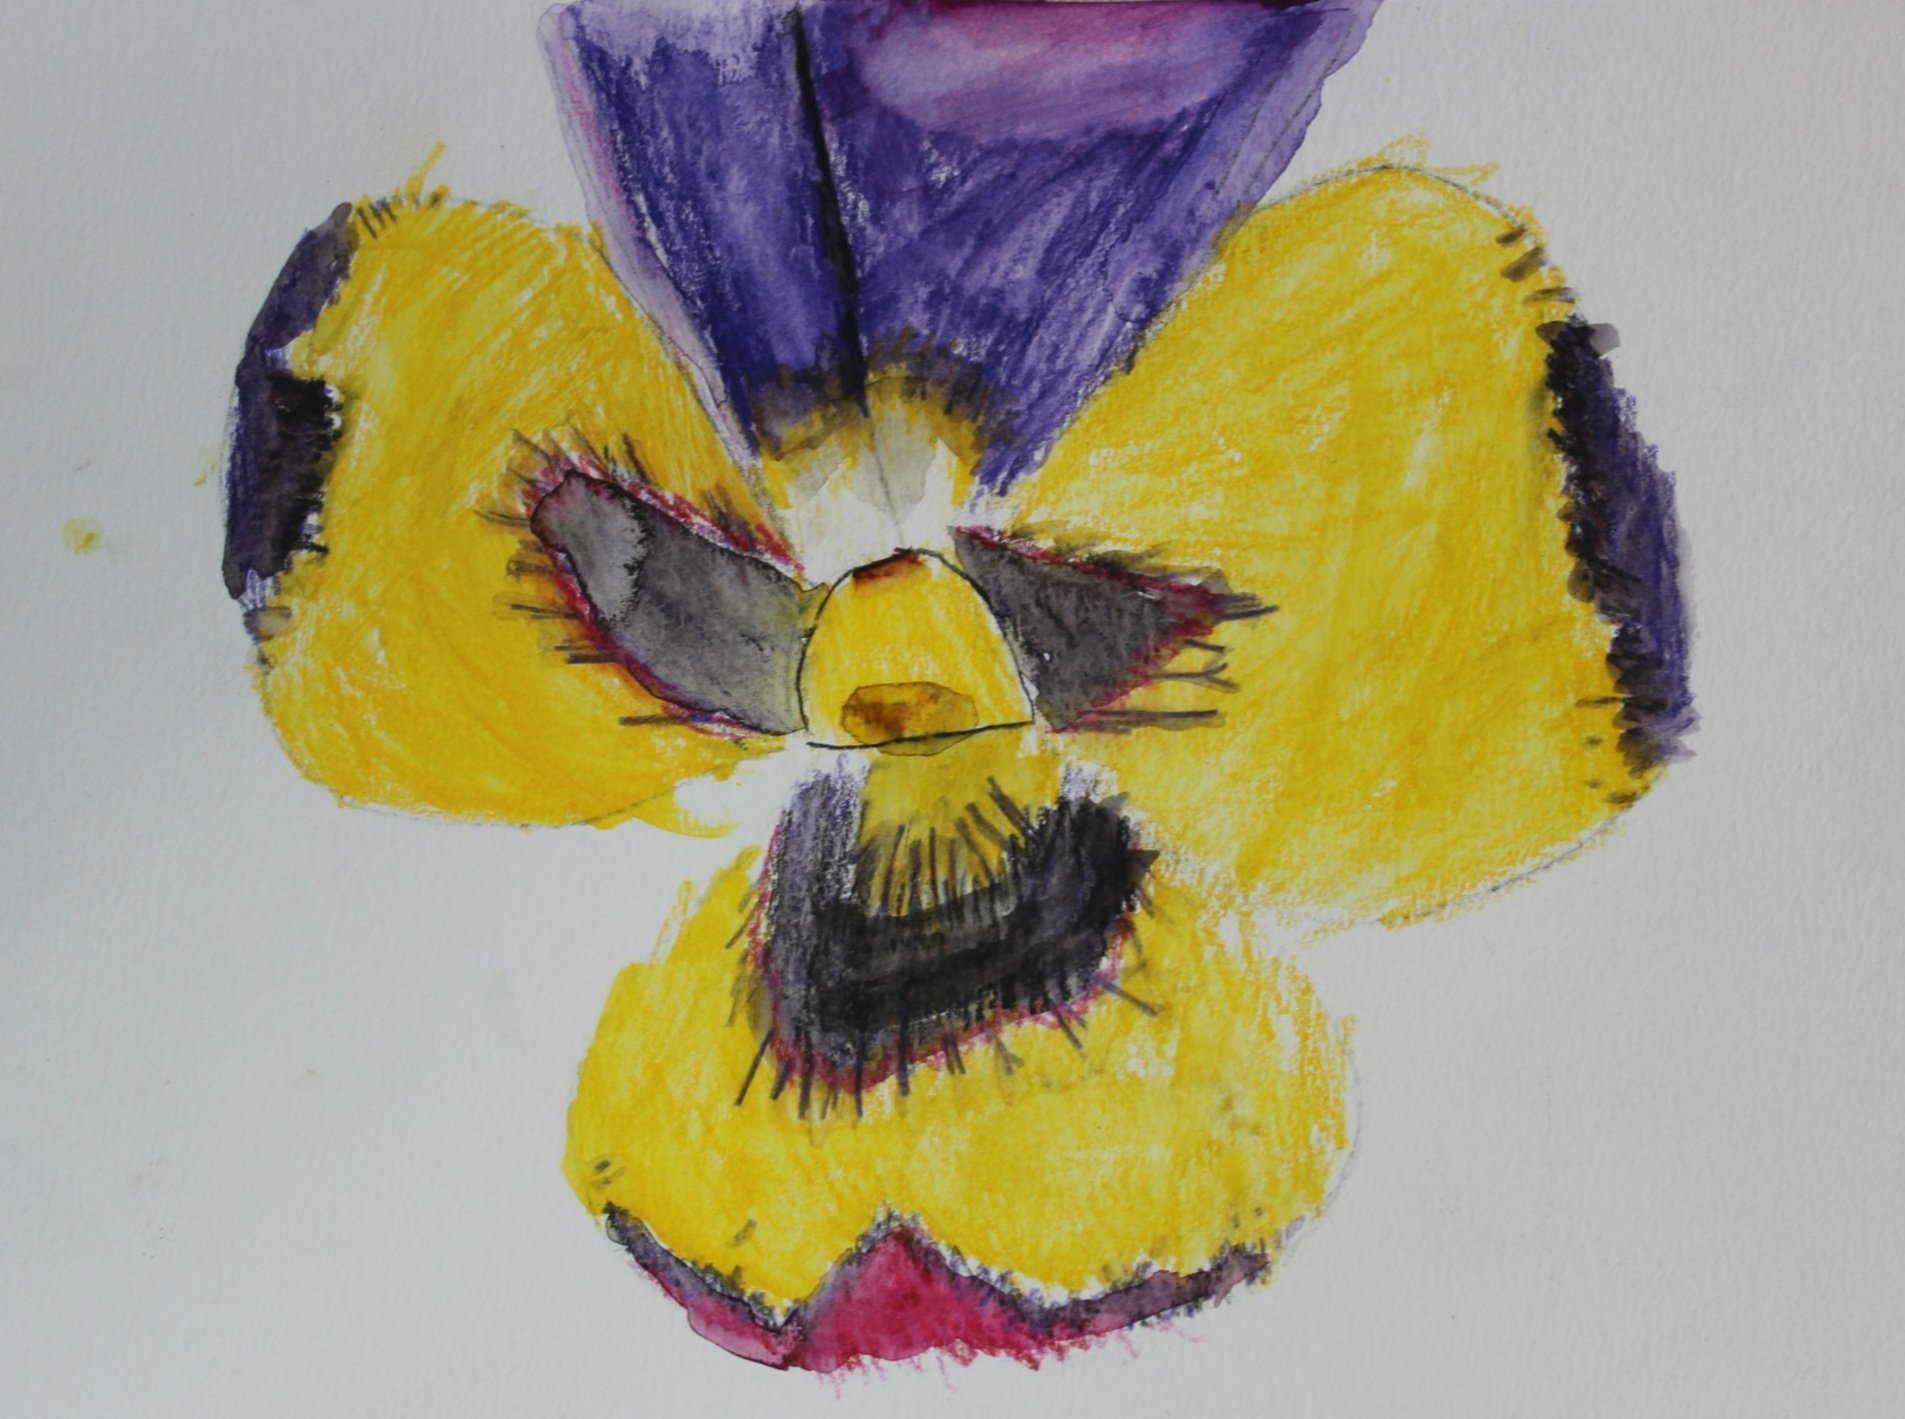 Levi, age 6, watercolor pencil